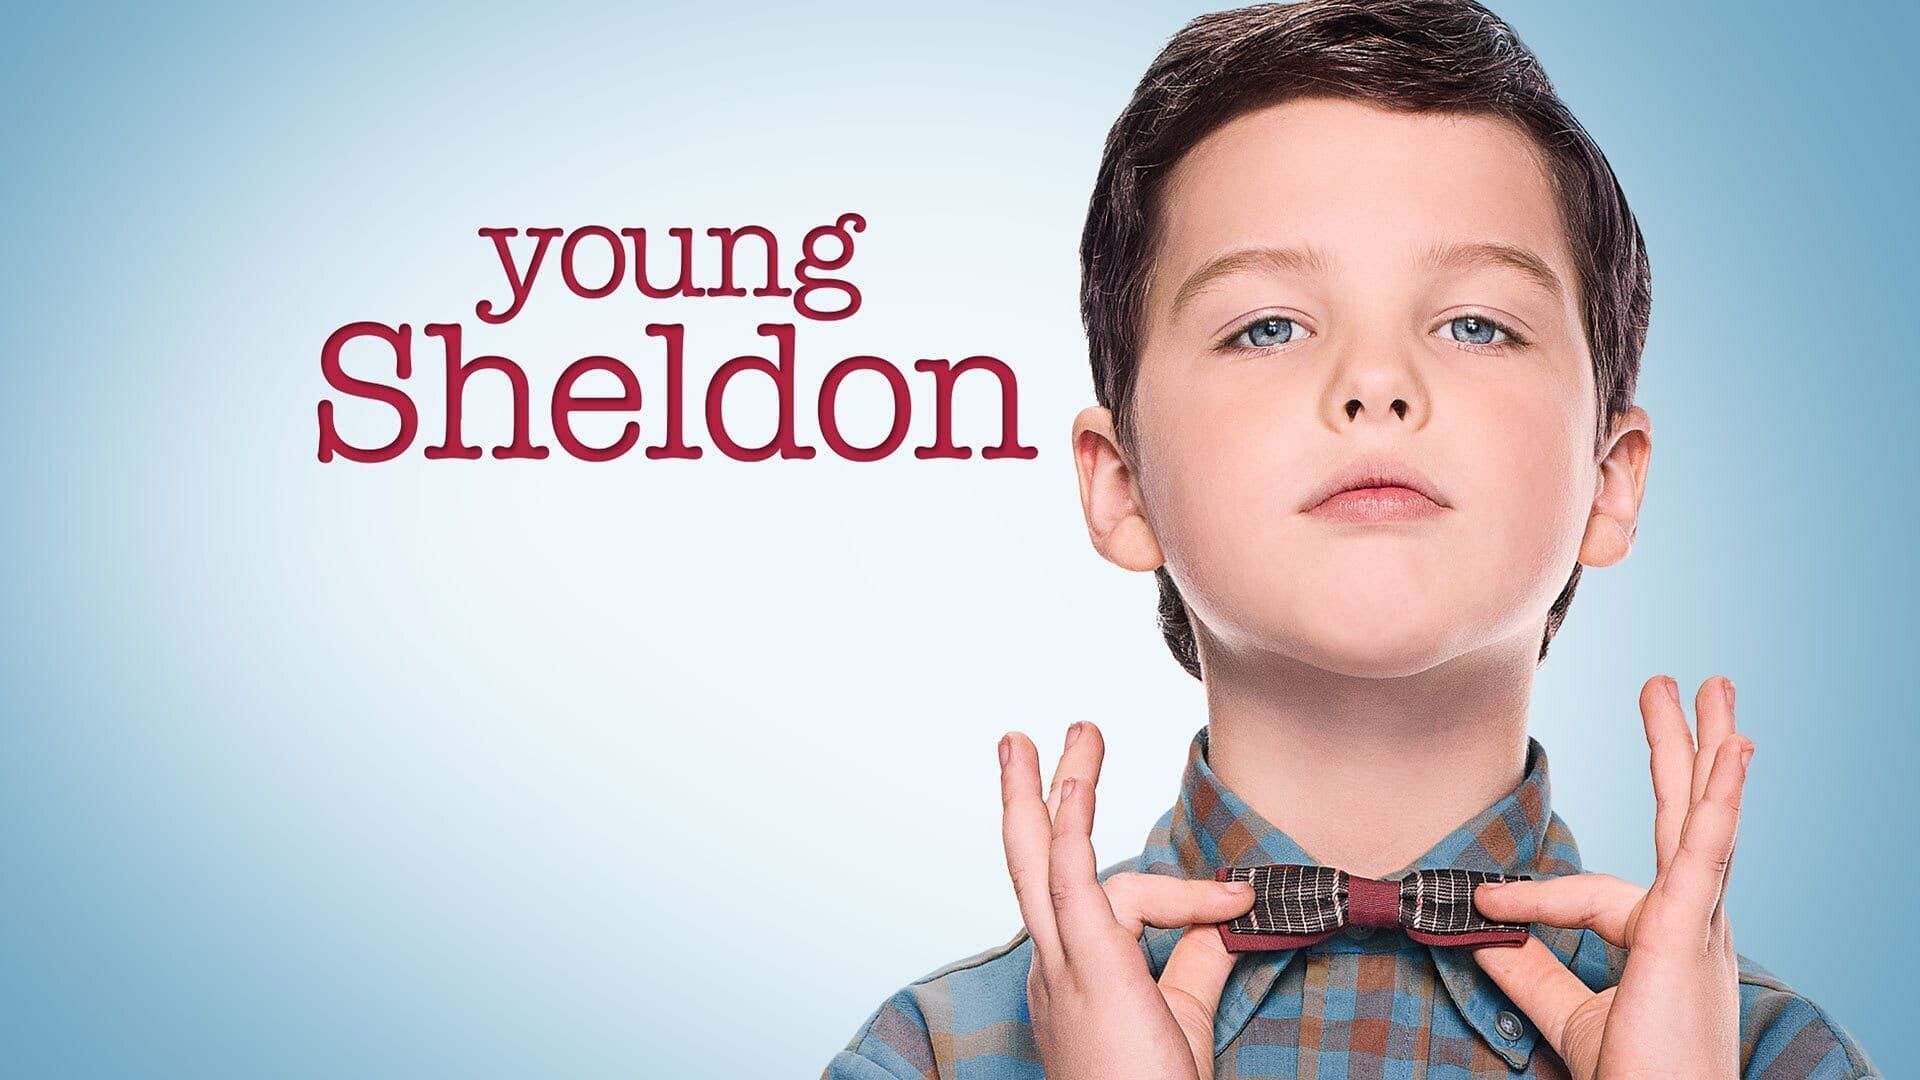 Young Sheldon (Image via CBS)